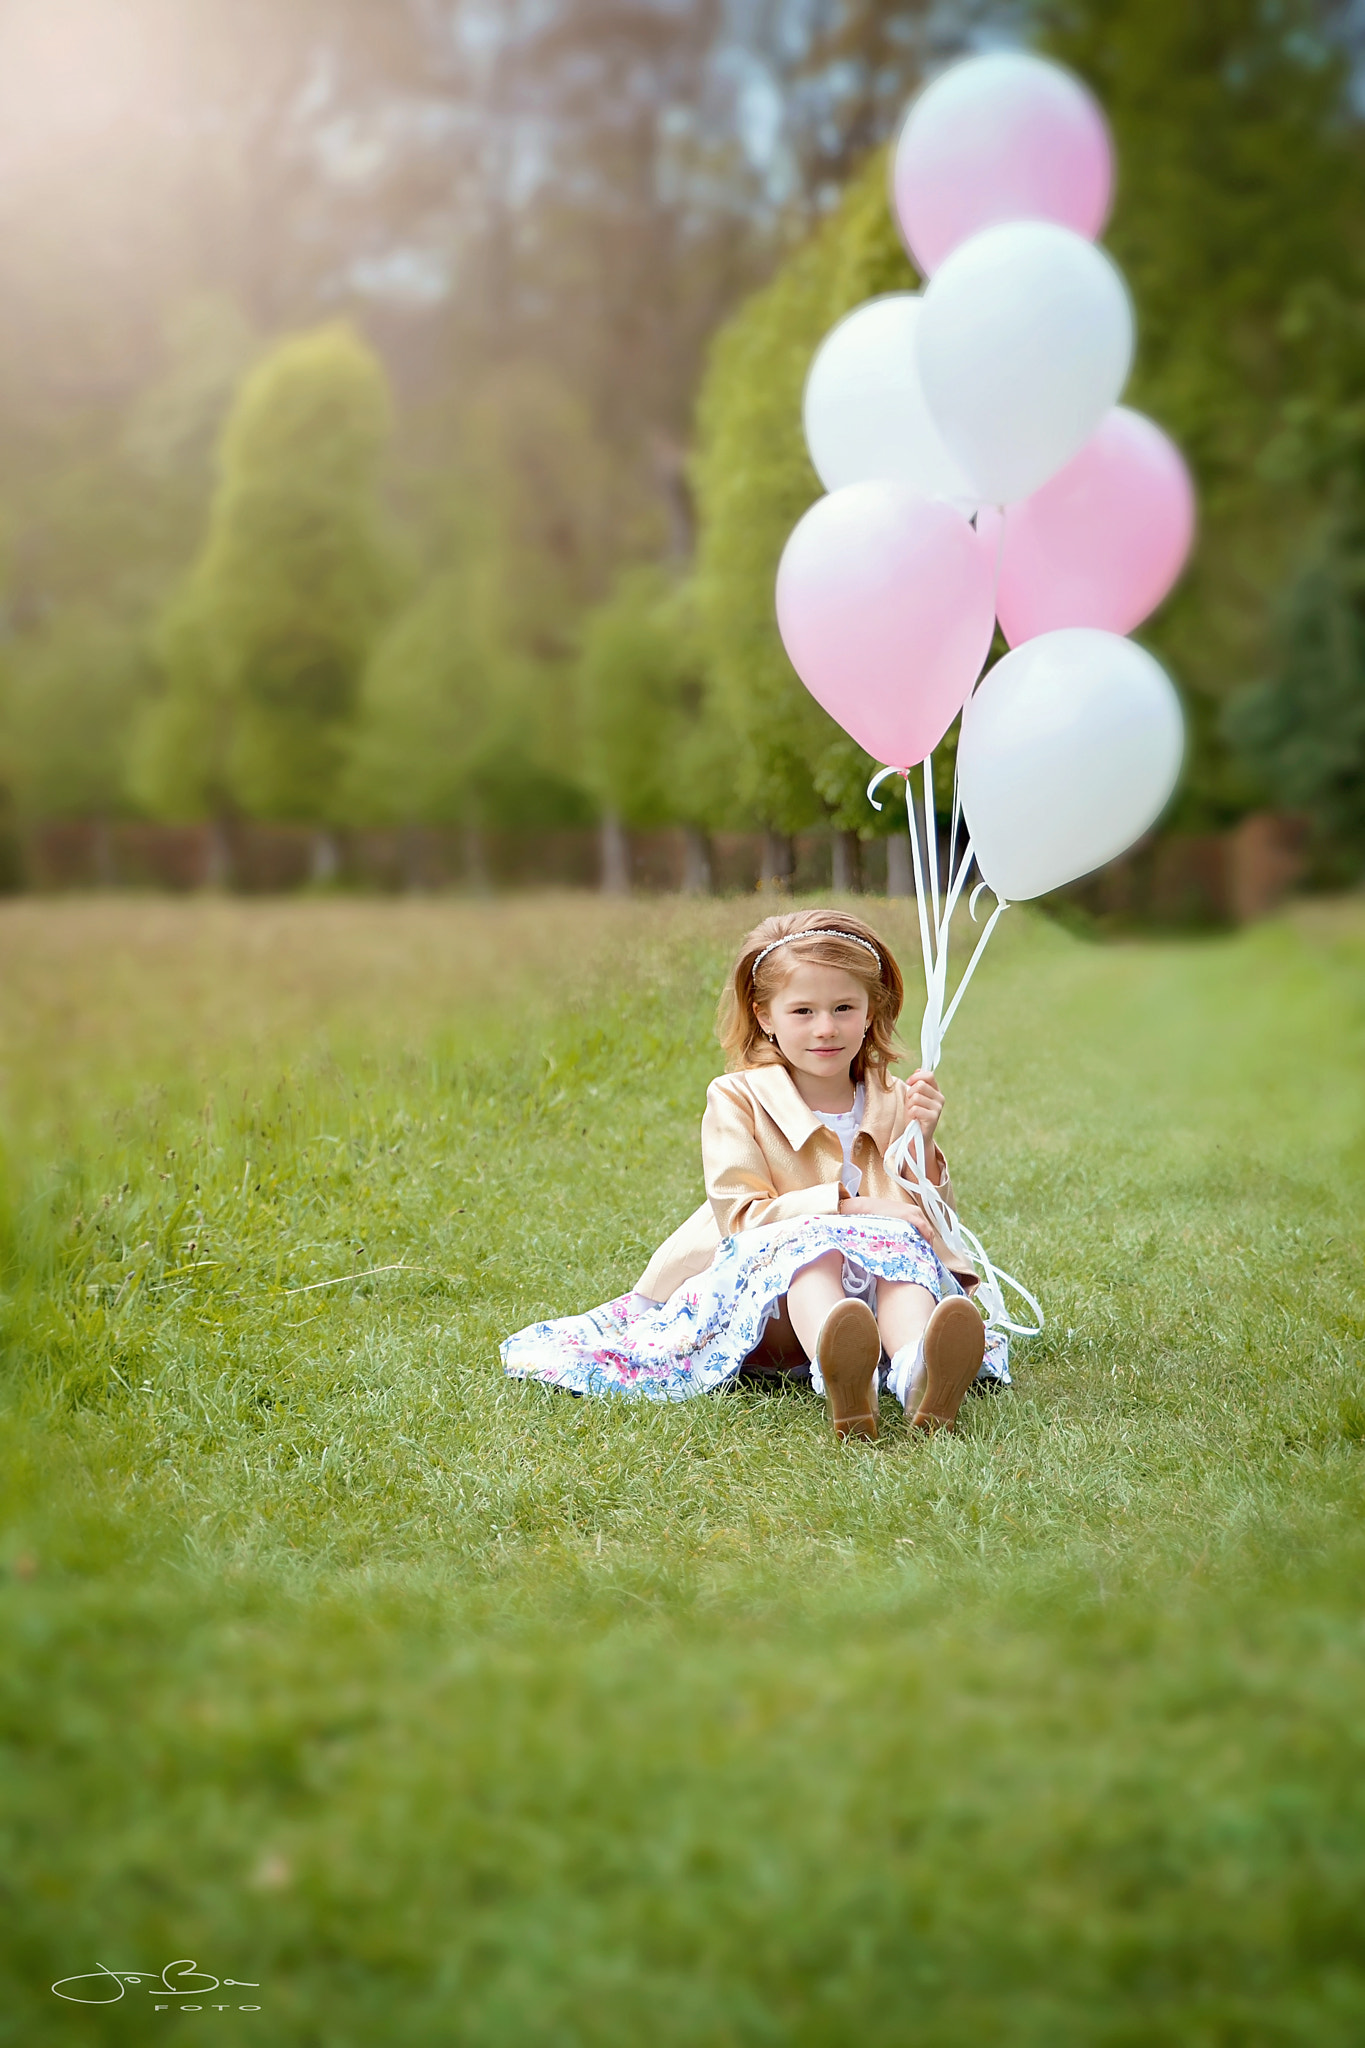 Canon EOS 80D sample photo. Balloon girl photography